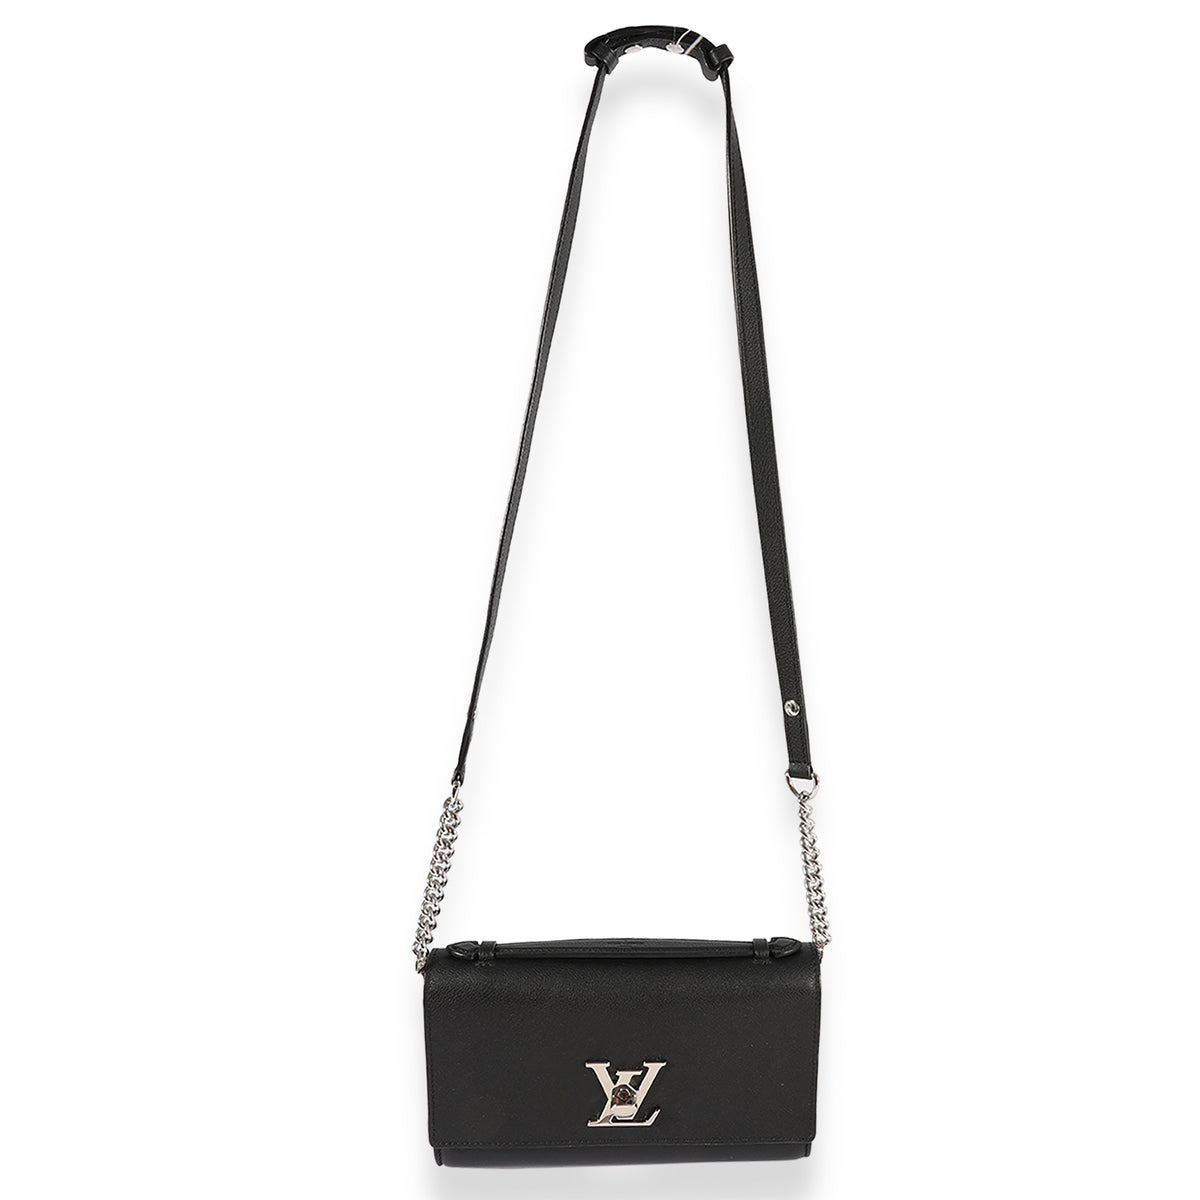 Louis Vuitton Black Taurillon Leather Lockme Short Handle Clutch, myGemma